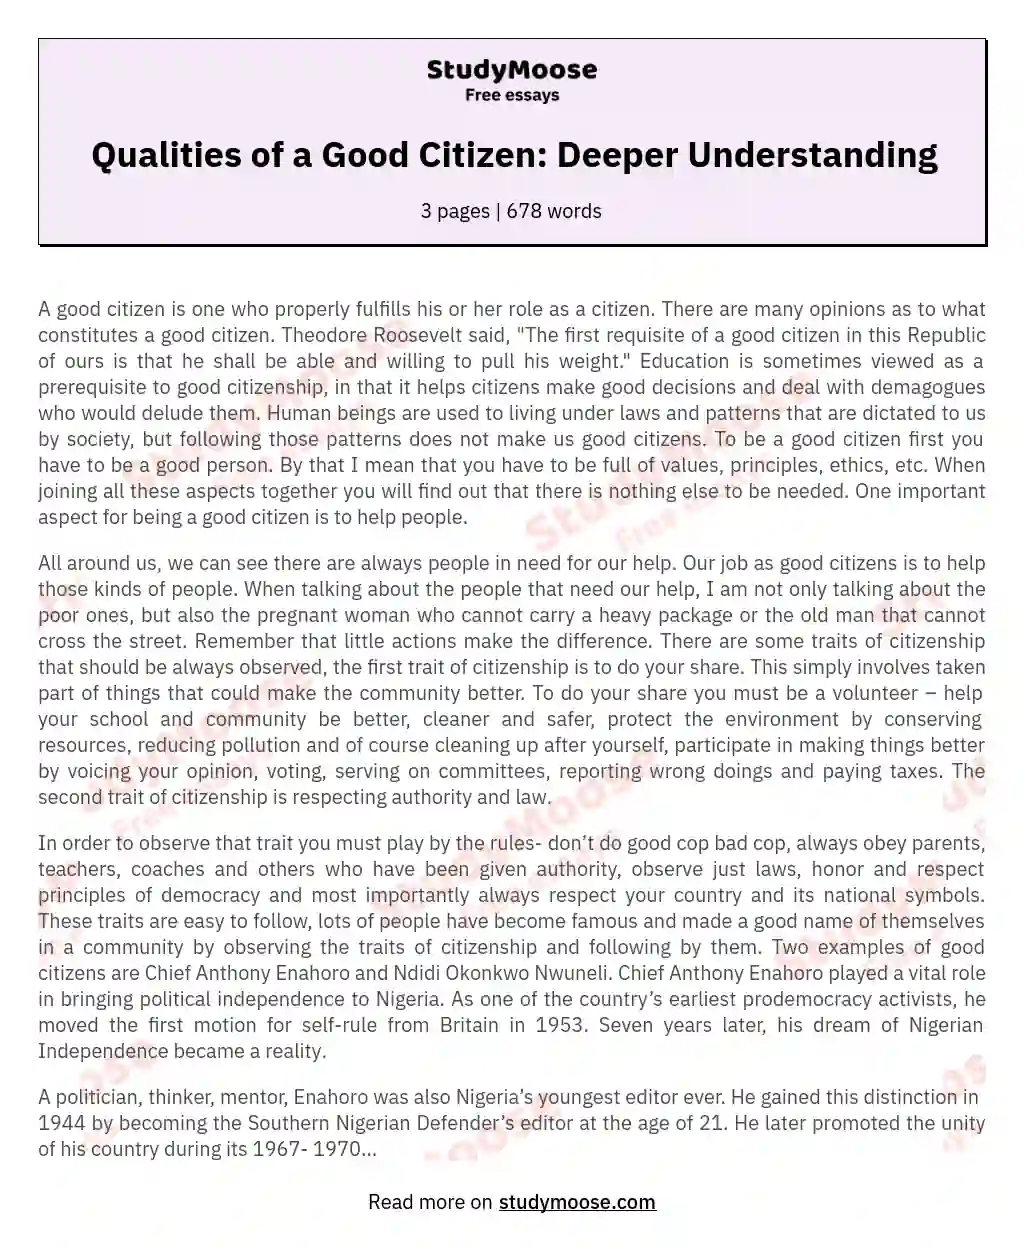 Qualities of a Good Citizen: Deeper Understanding essay